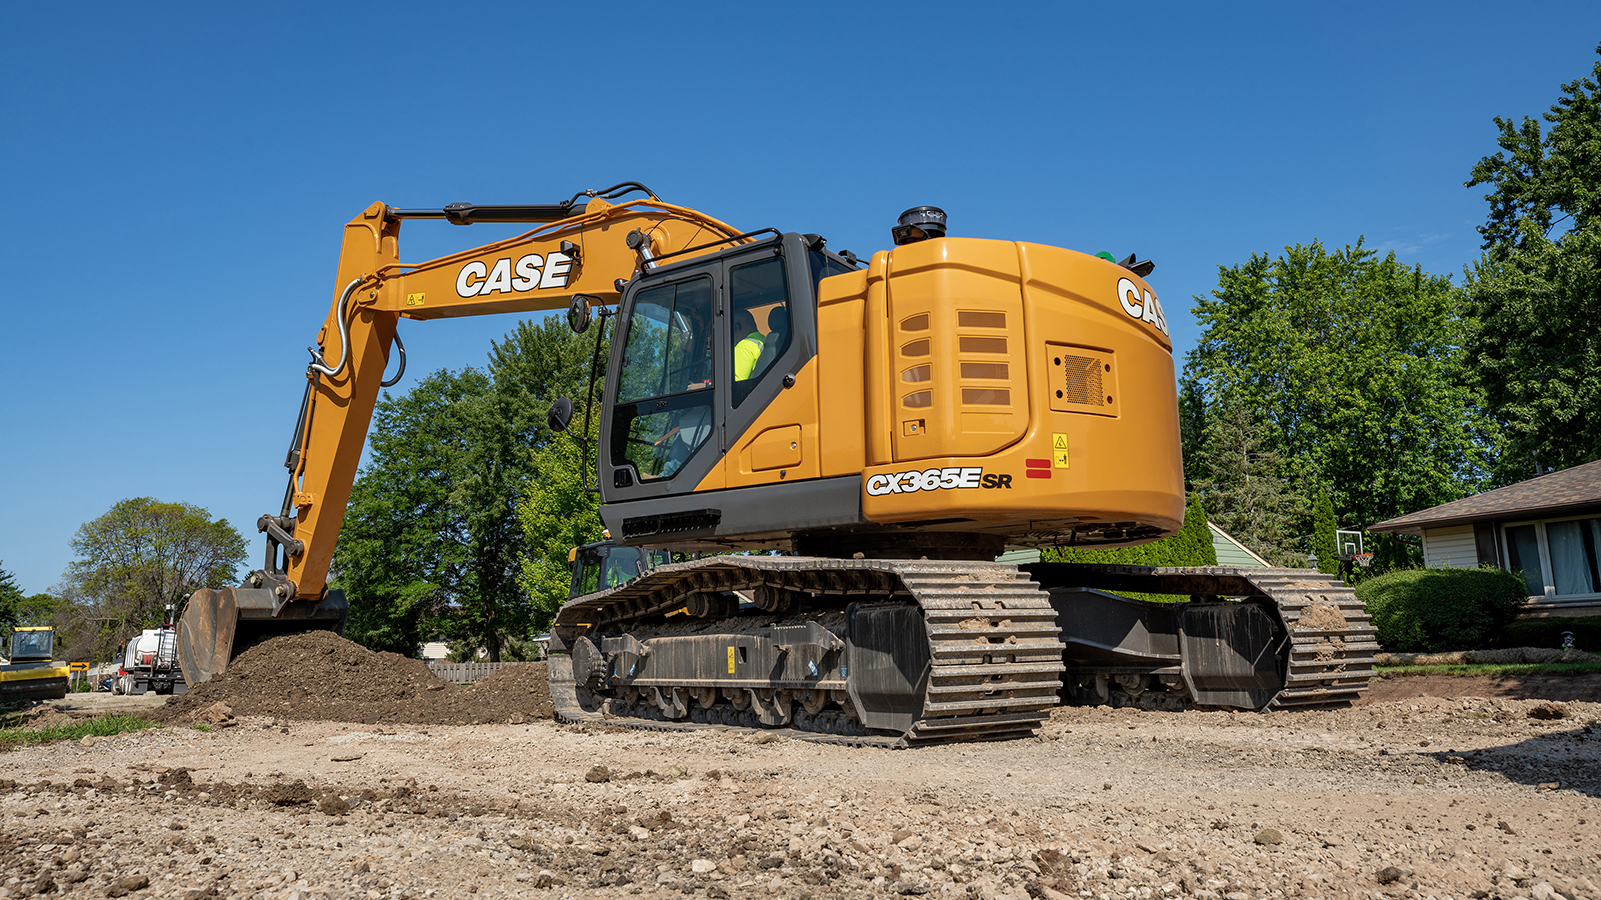 CASE CX365E SR Excavator